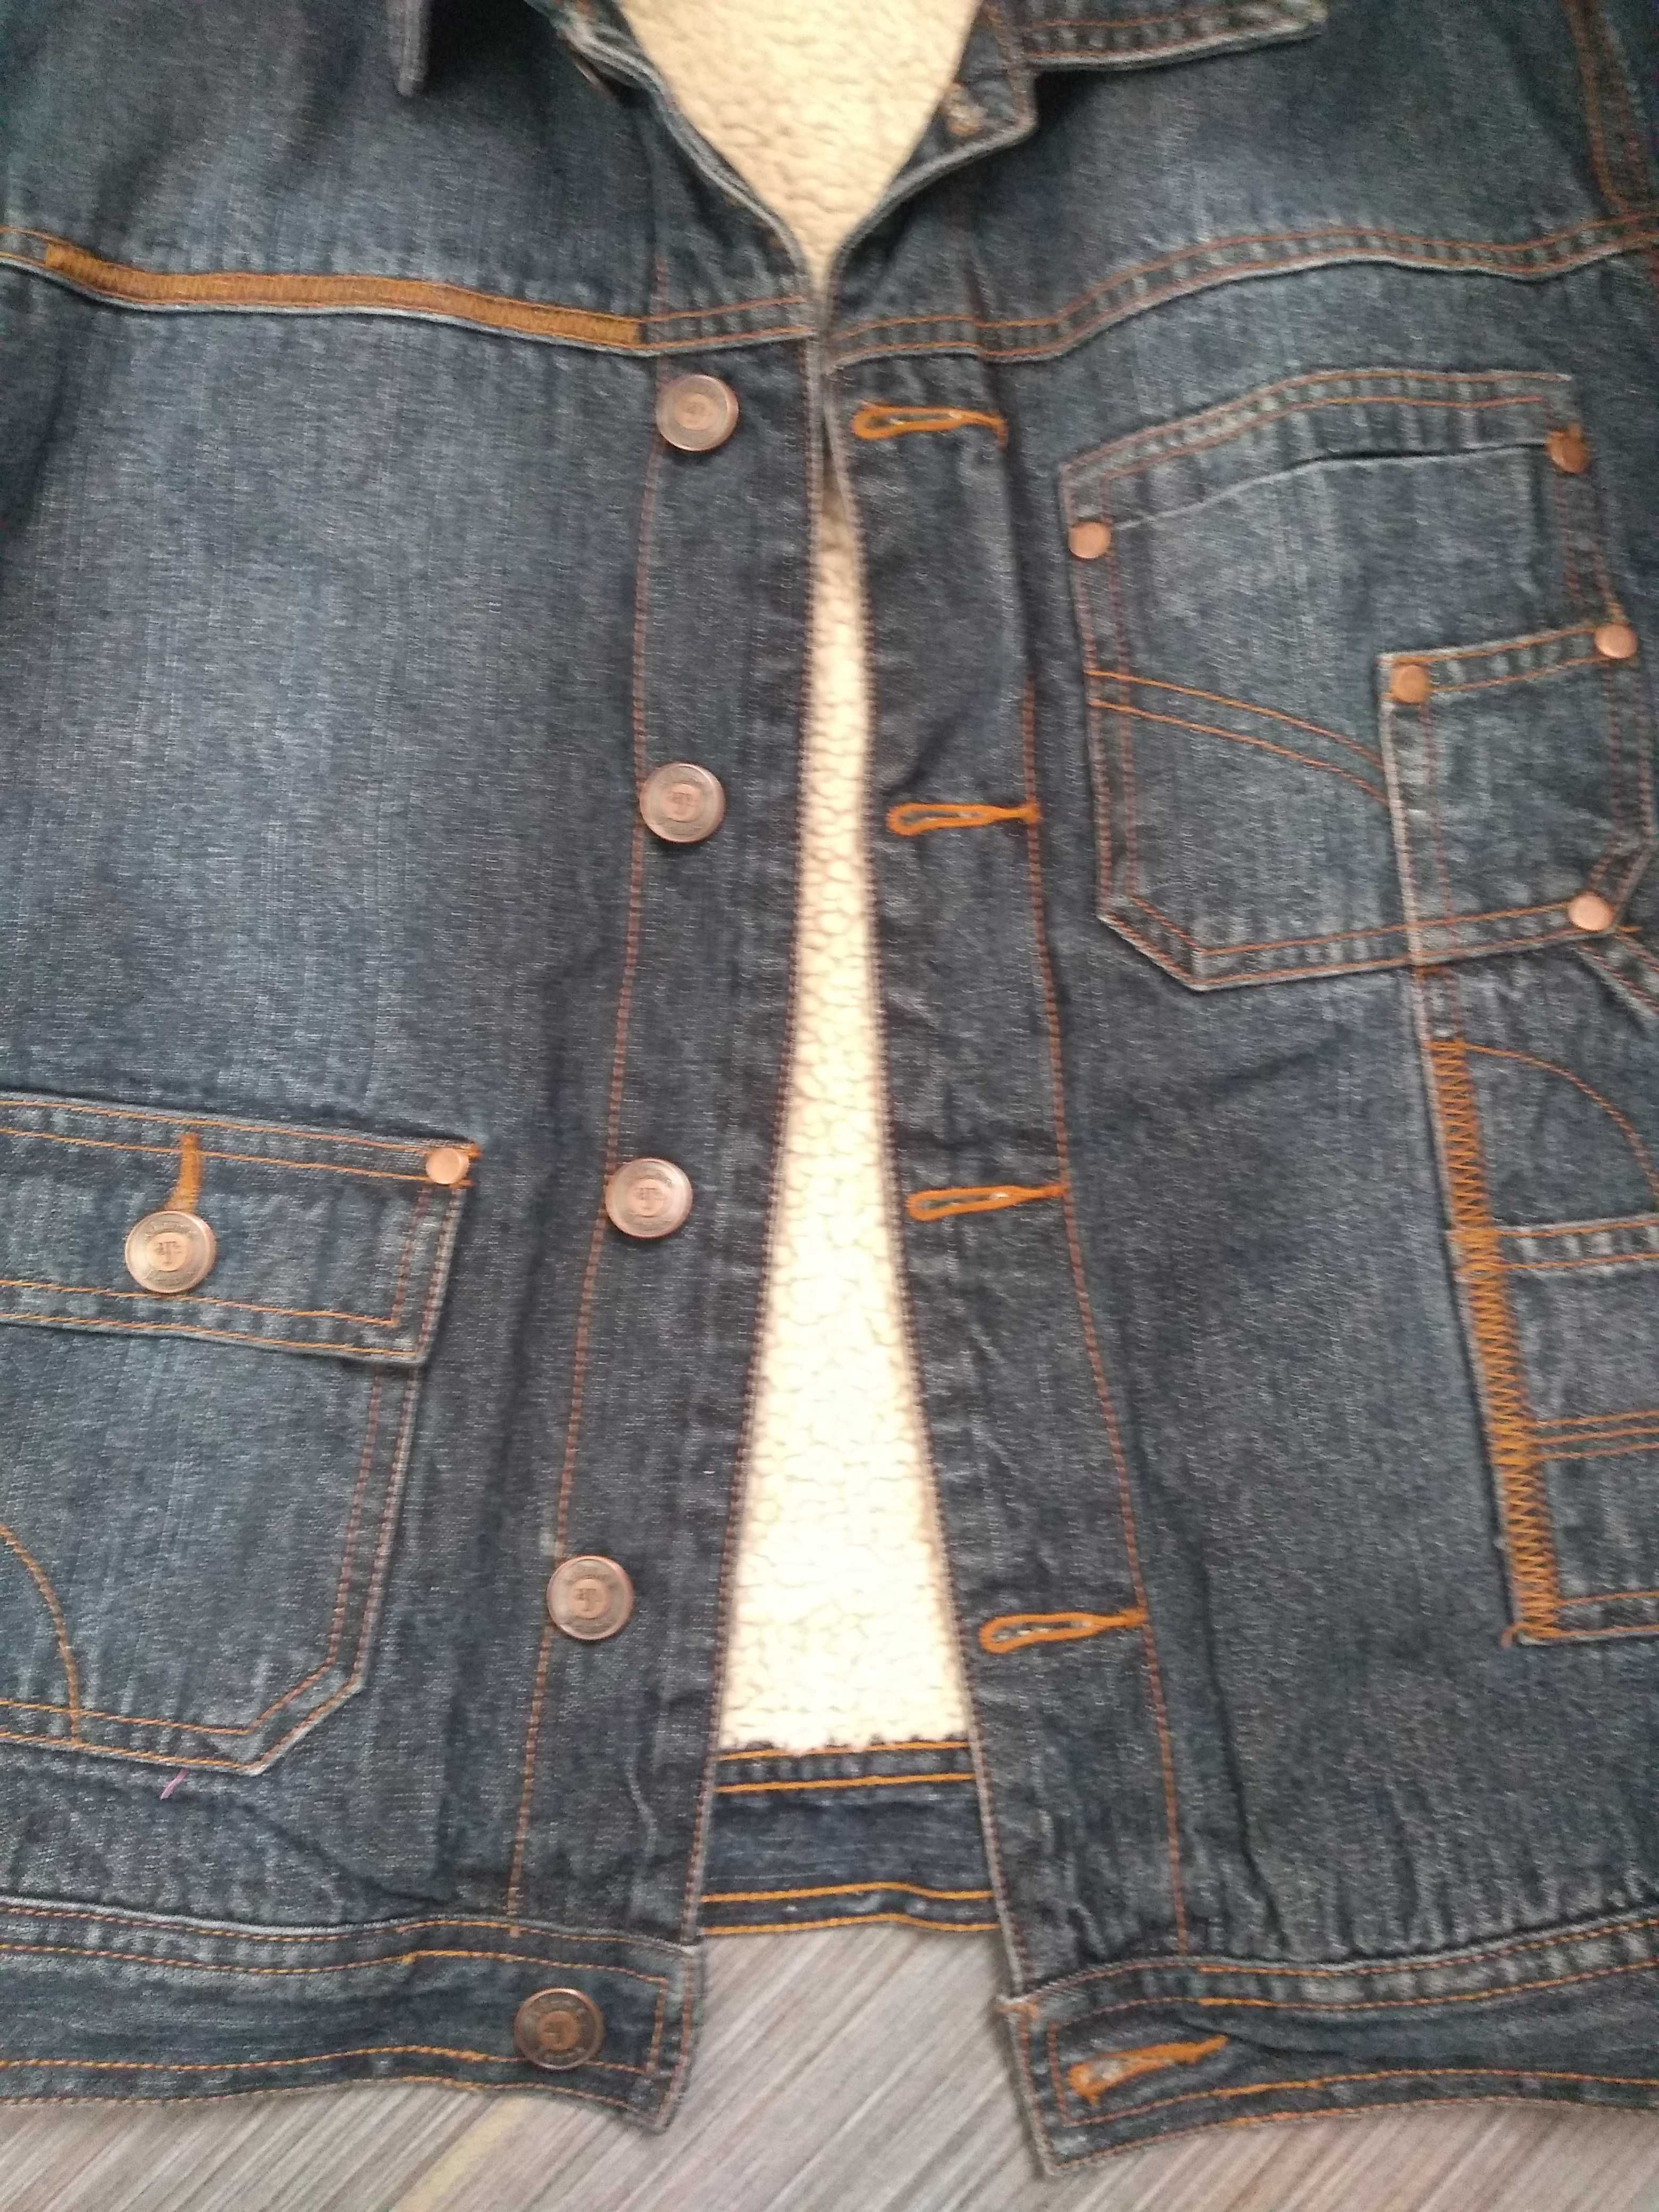 Kurtka wiosenna katana jeansowa 128 rozmiar